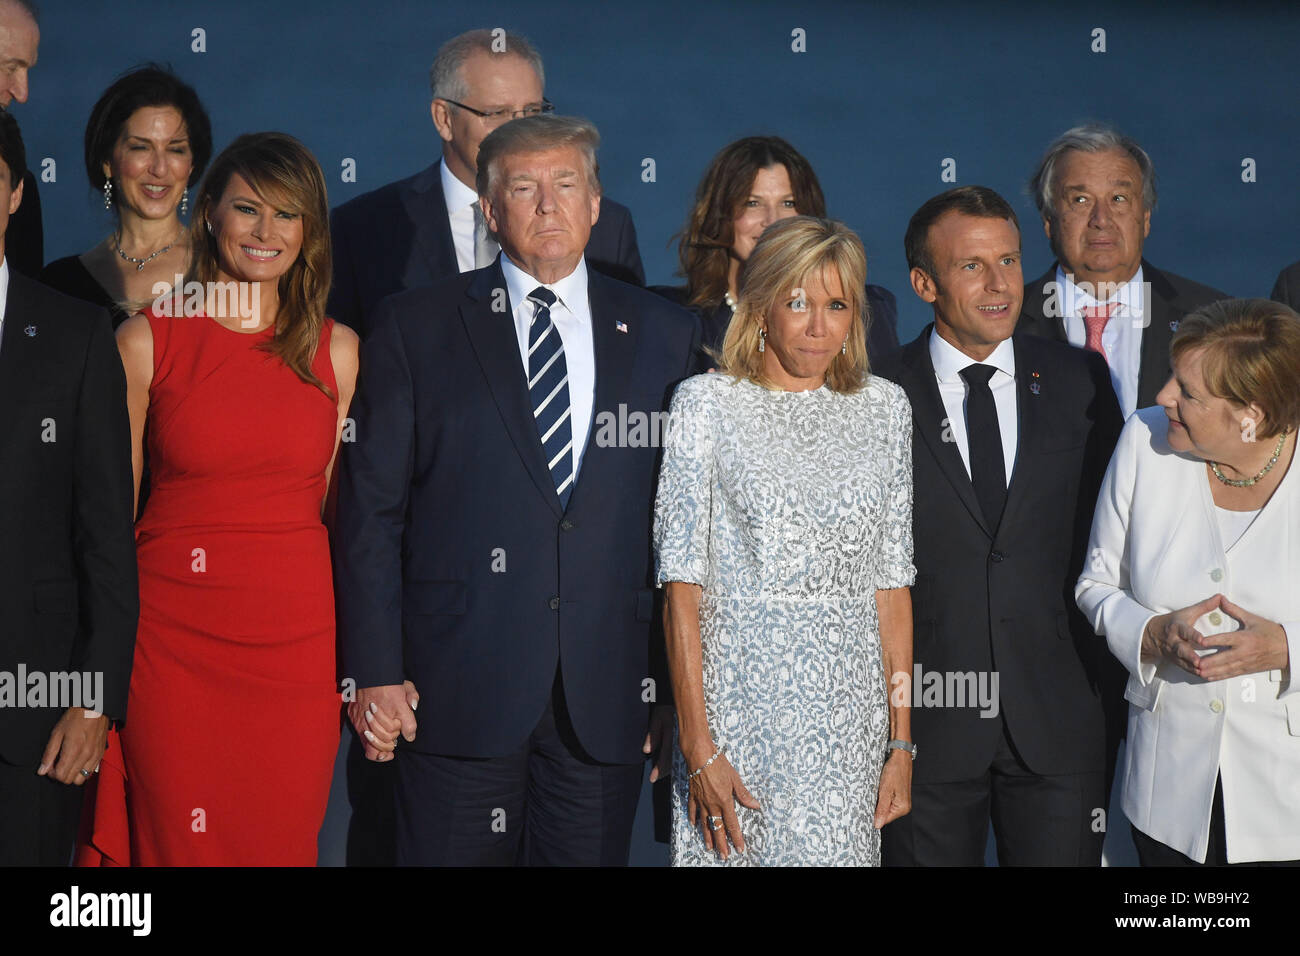 Melania Trump, Président des Etats-Unis, Donald Trump, Brigitte Macron, l'épouse du Président français, Emmanuel Macron, et la Chancelière allemande, Angela Merkel, inscrivez-vous d'autres dirigeants du monde pour la photo de famille au sommet du G7 à Biarritz, France. Banque D'Images